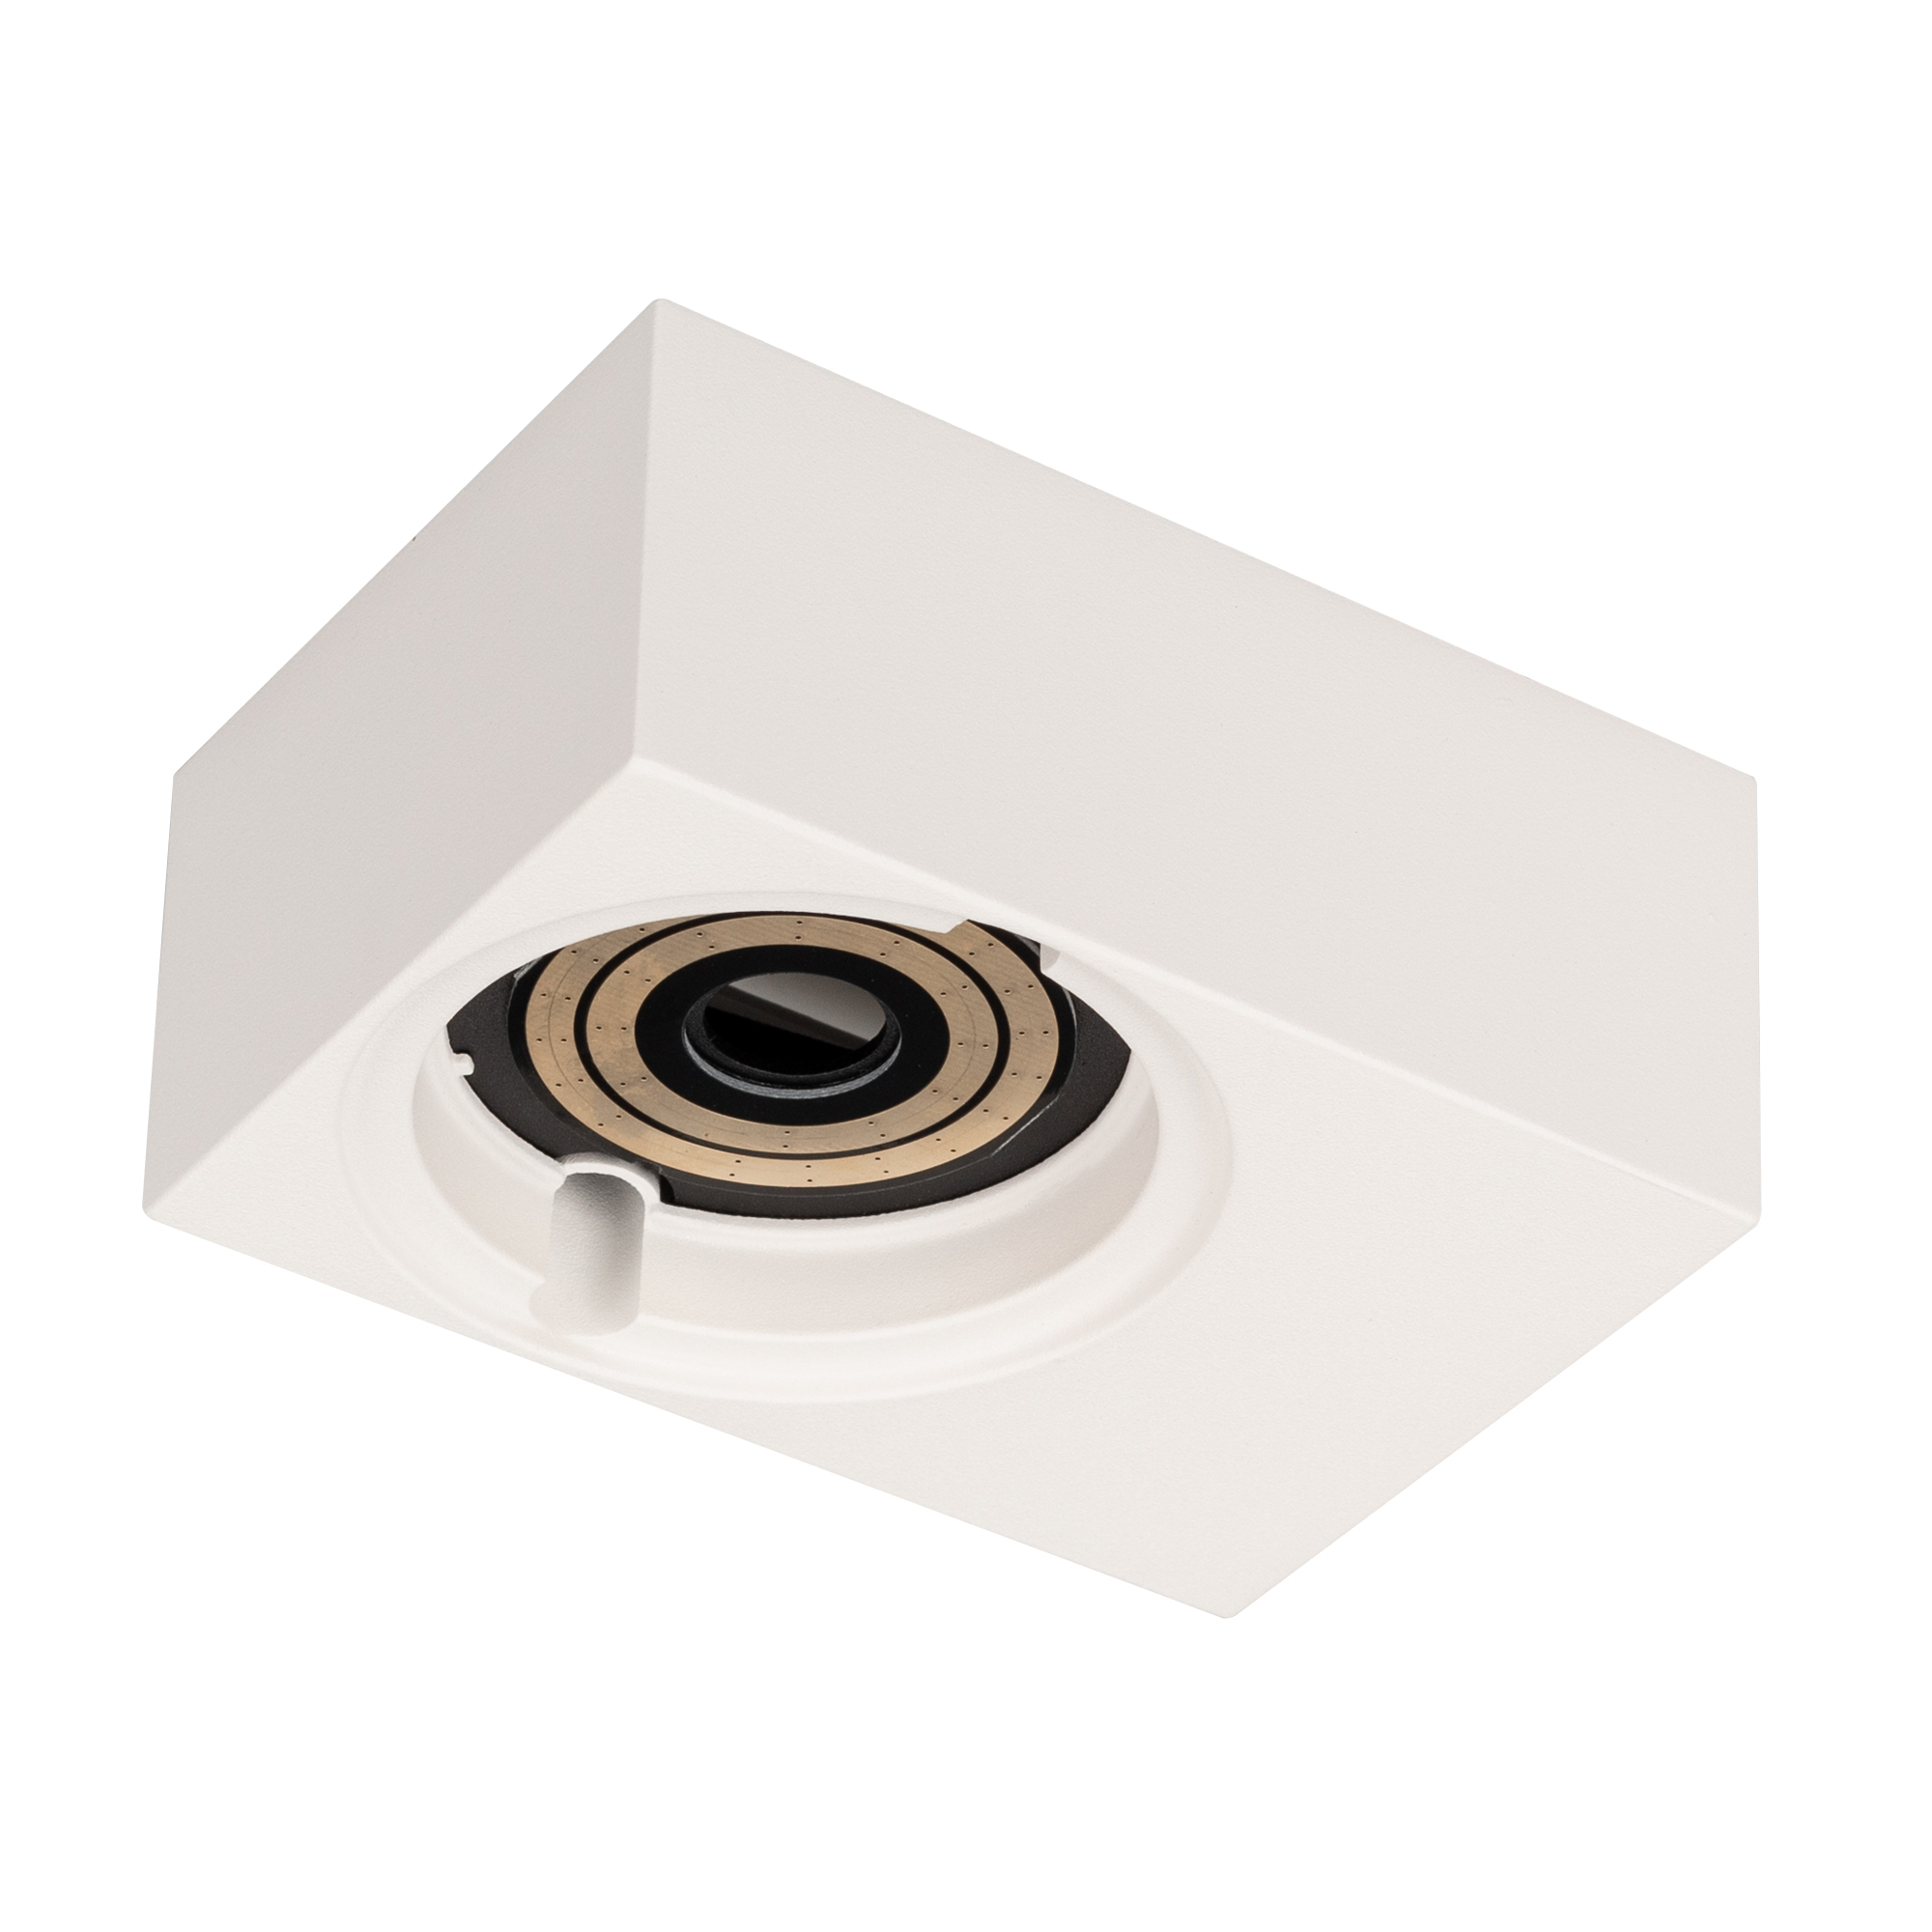 Корпус для потолочного светильника с драйвером PLURIO-BASE-SURFACE-S112x79 (WH, 1-2, 200mA) Arlight 030258, цвет белый